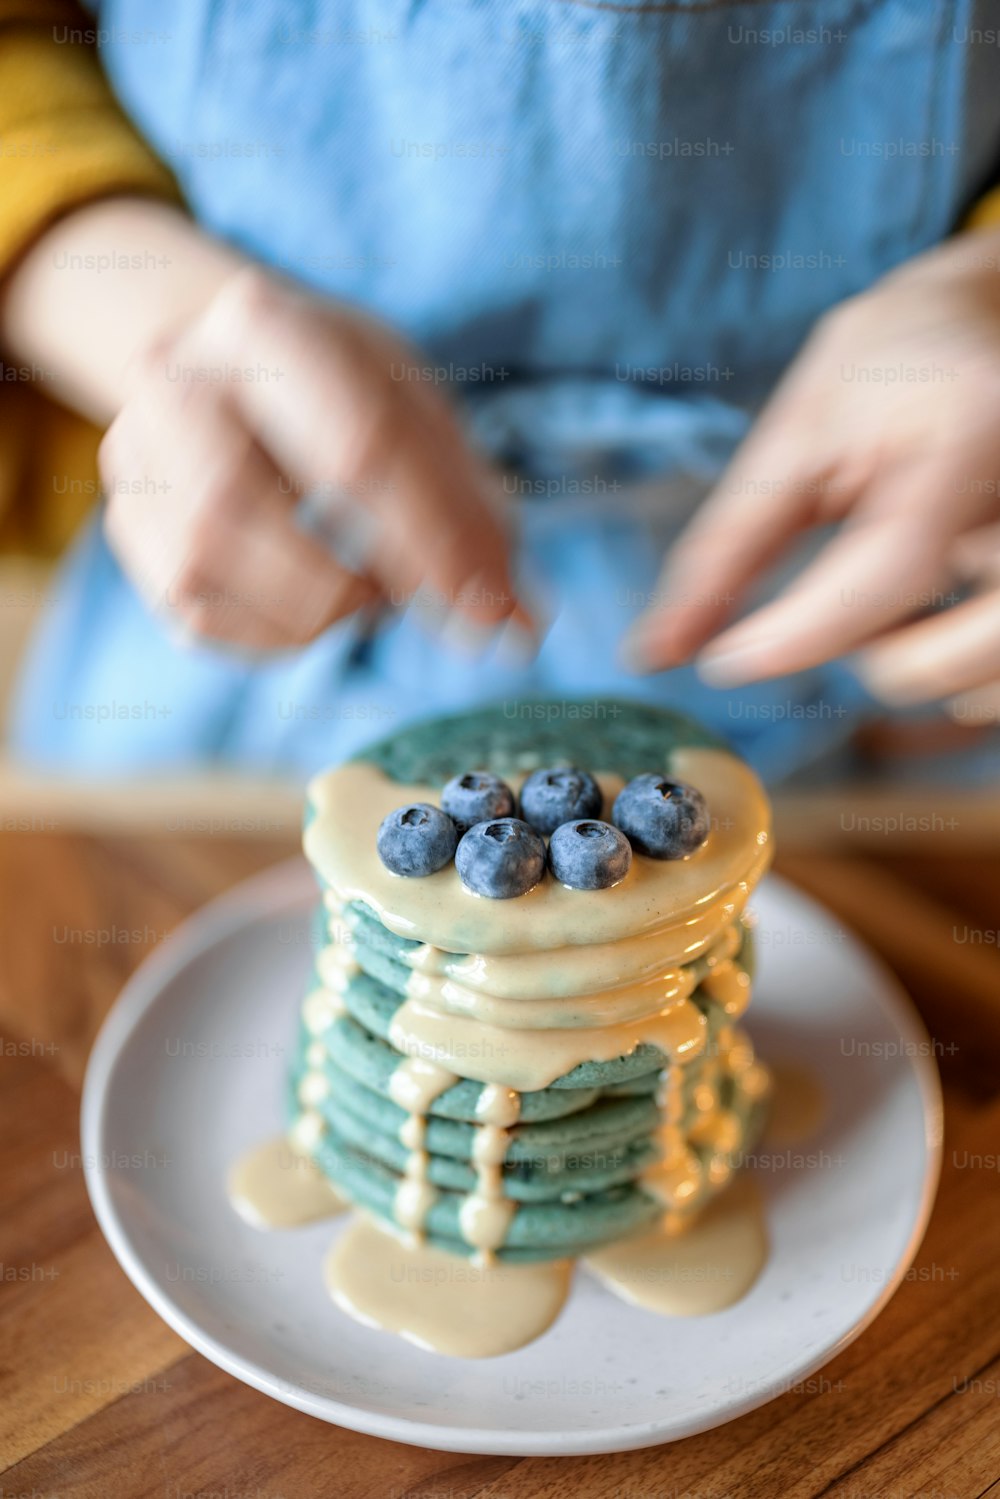 Femme en tablier bleu décorer des crêpes américaines bleues avec des myrtilles versées avec de la souse au caramel sur une table en bois. Nourriture savoureuse faite maison. Célébration du Gras.